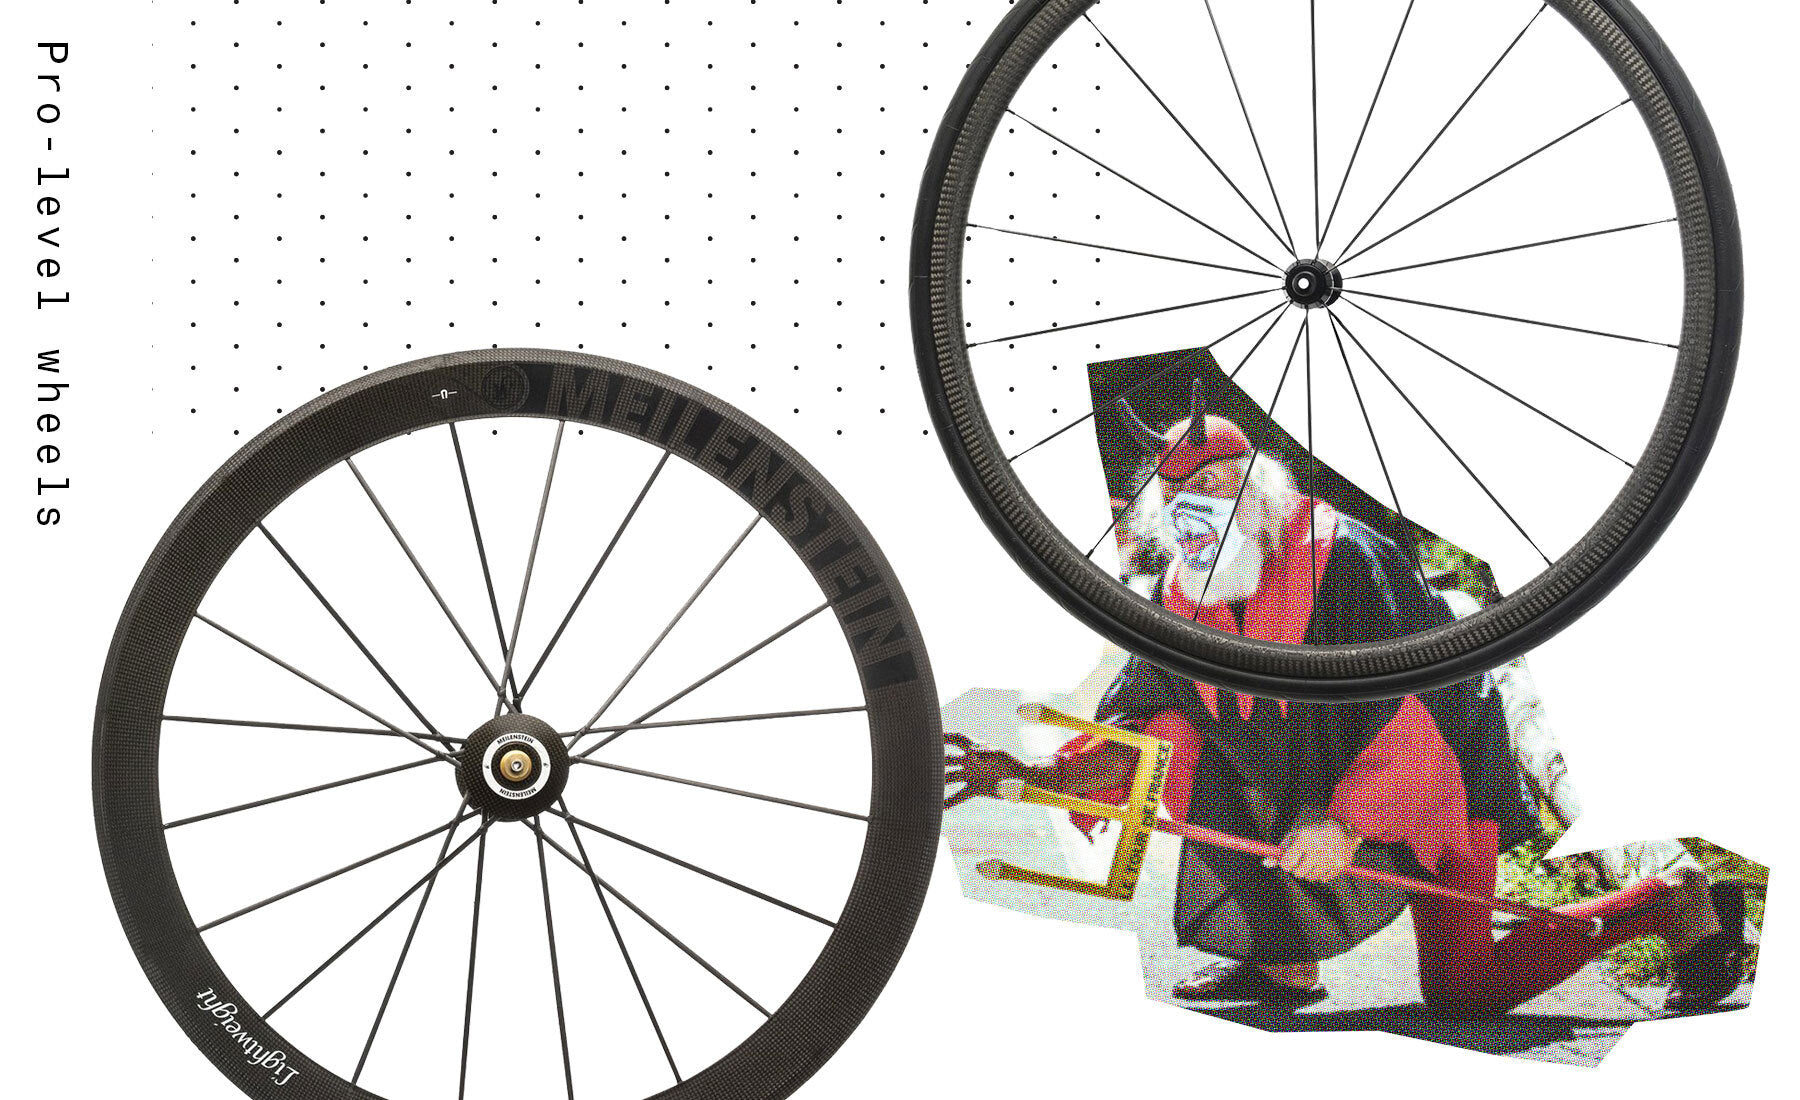 Tour de France pro level road bike wheels for sale